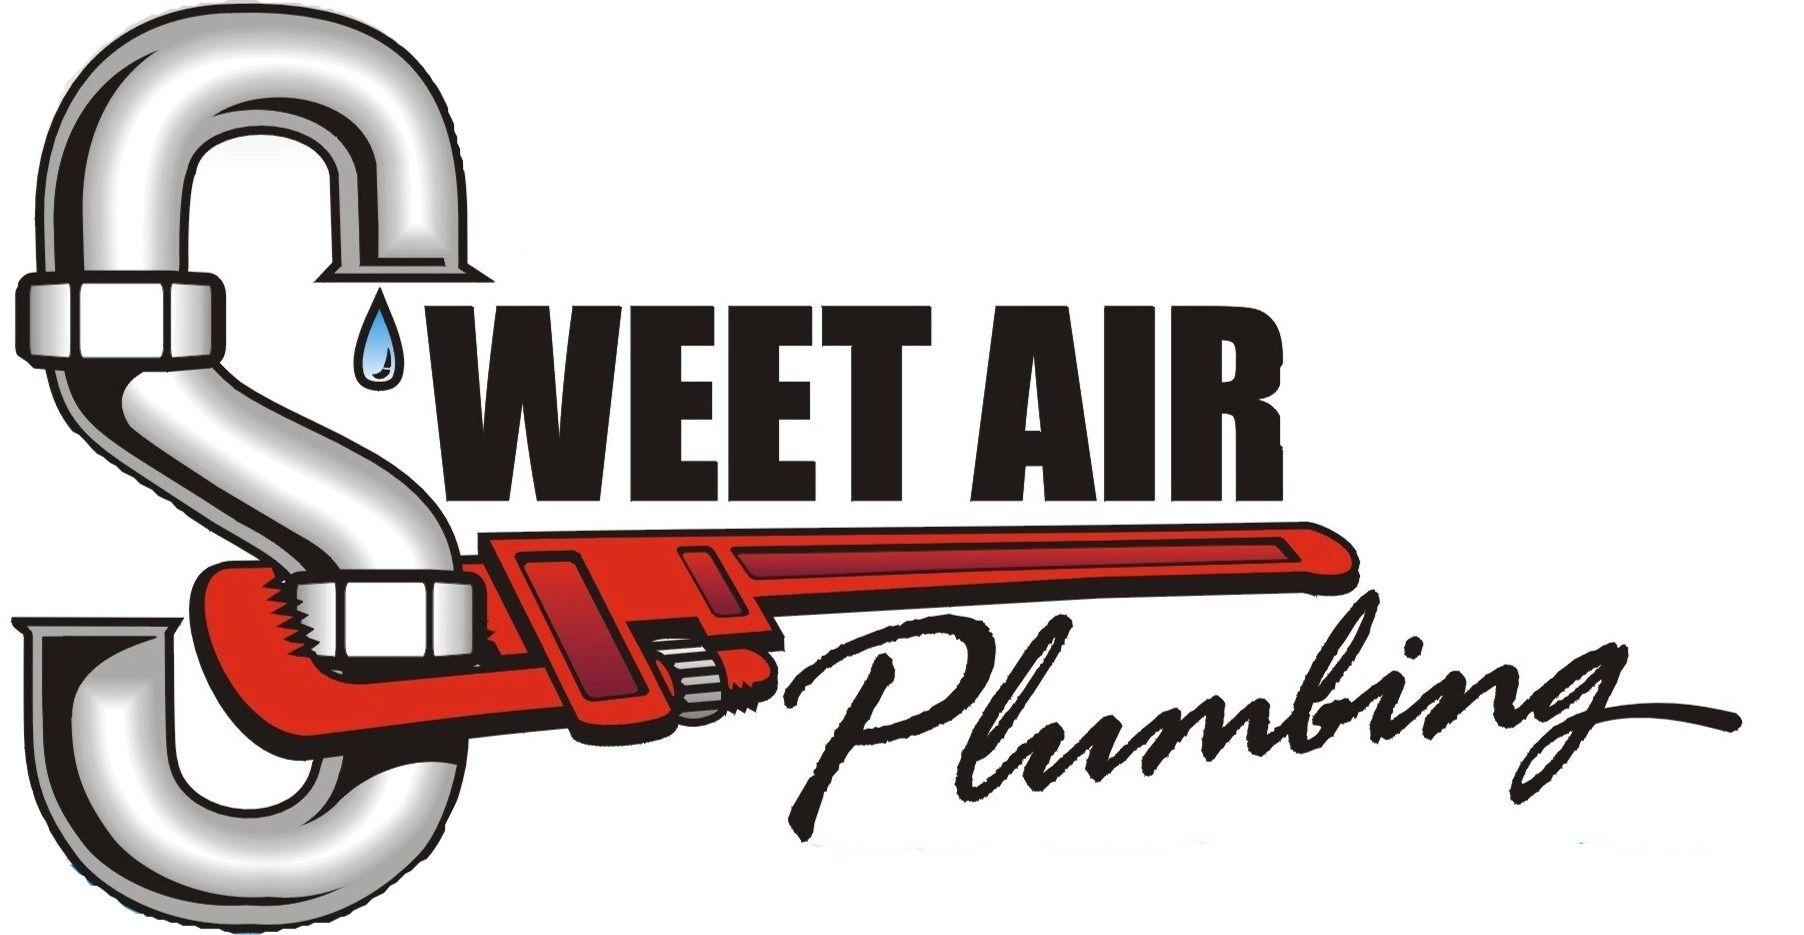 Plumbing Logo - Plumbing logo banner free stock - RR collections